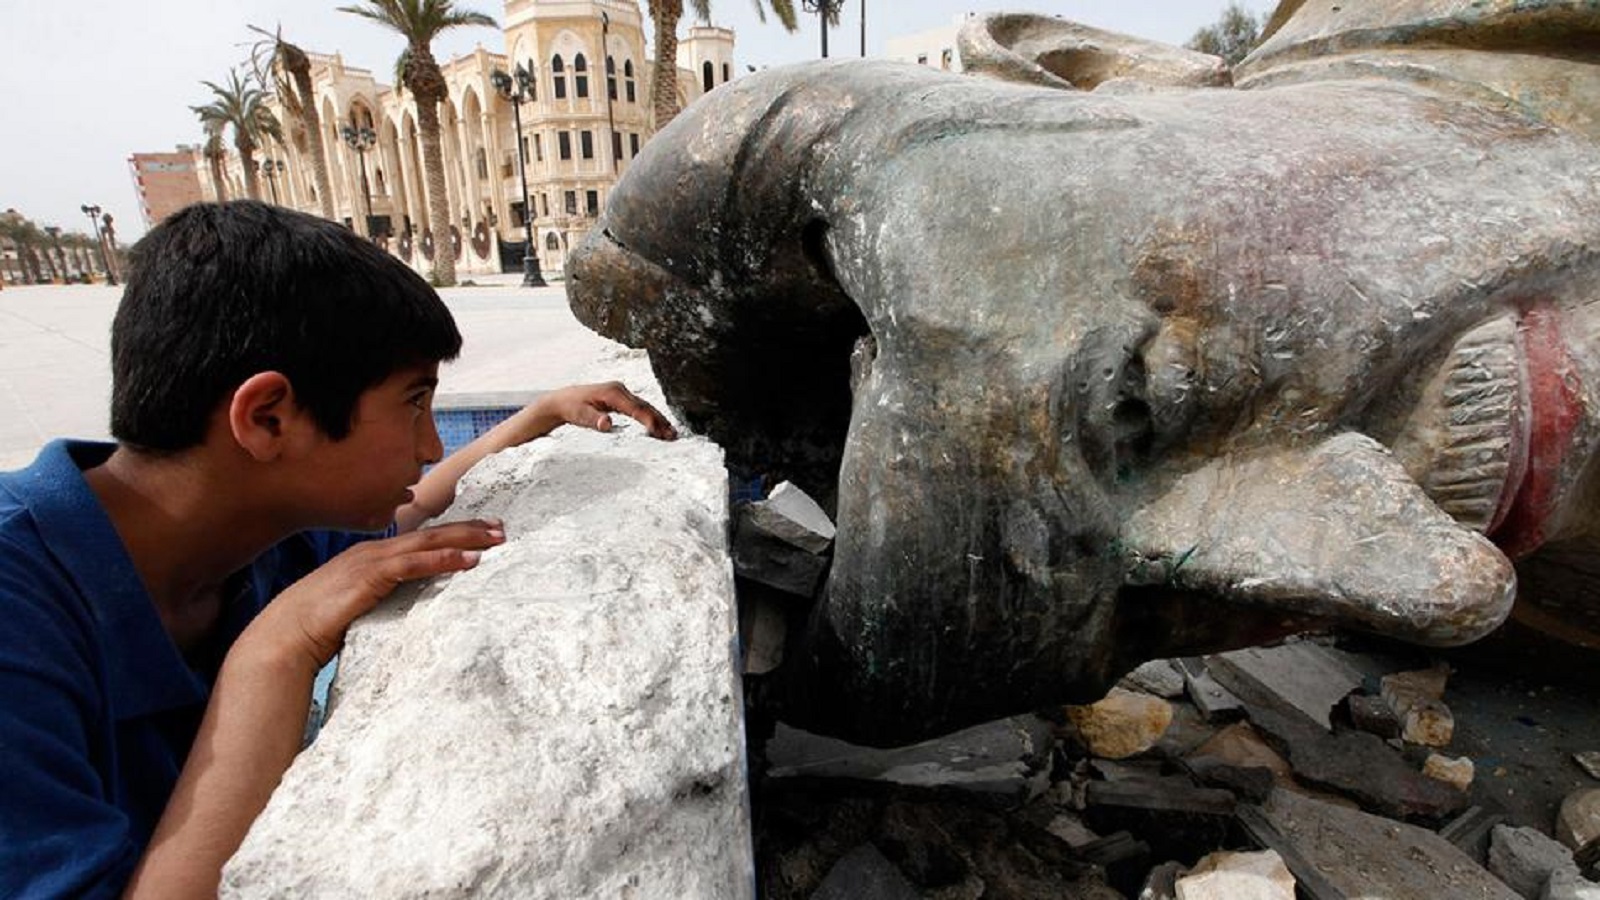 طفل ينظر في جوف تمثال حافظ الاسد المحطم في مدينة الرقة